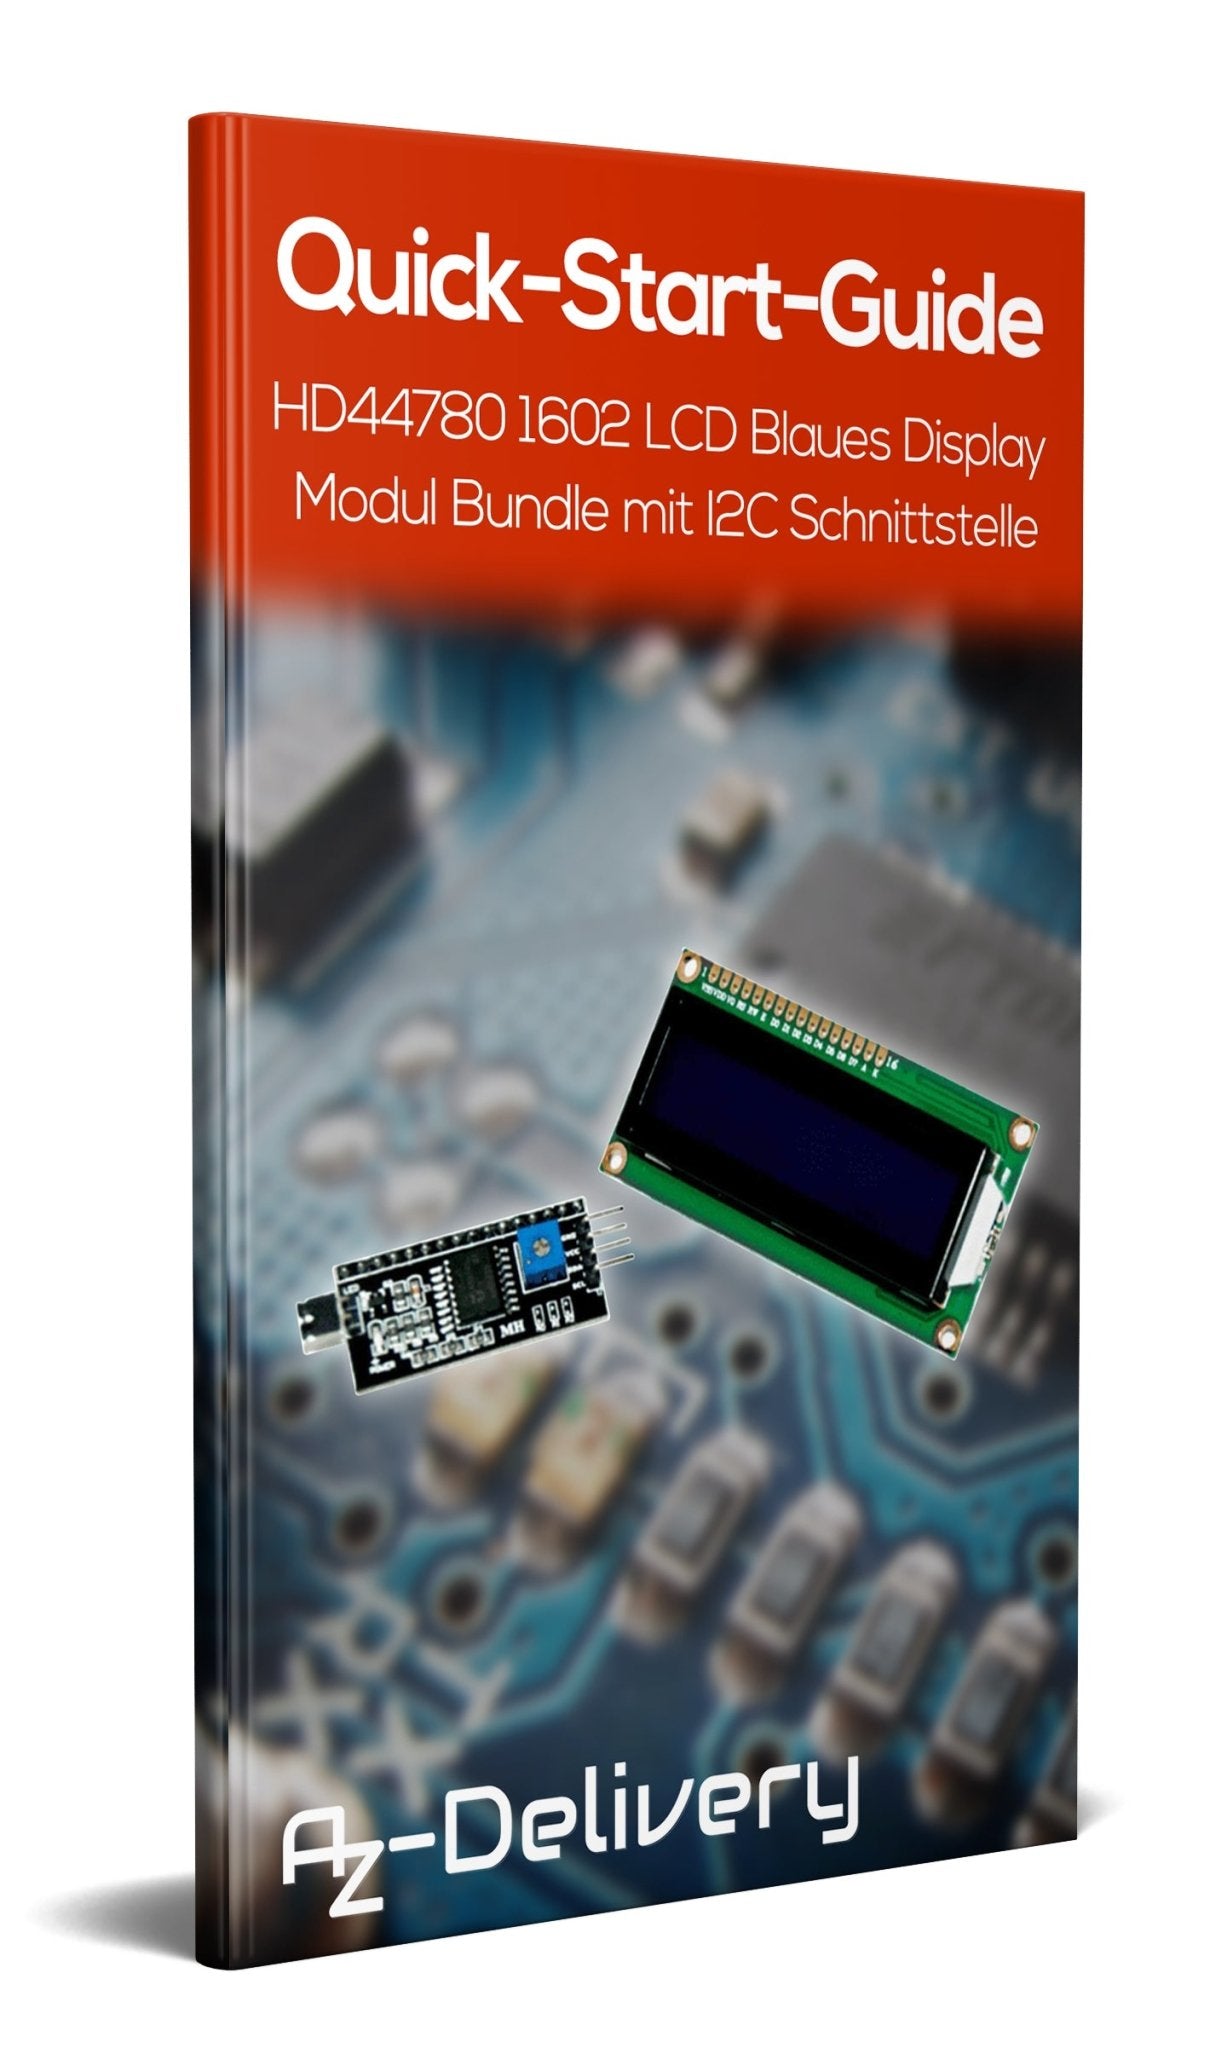 HD44780 1602 LCD Modul Display Bundle mit I2C Schnittstelle 2x16 Zeichen - AZ-Delivery